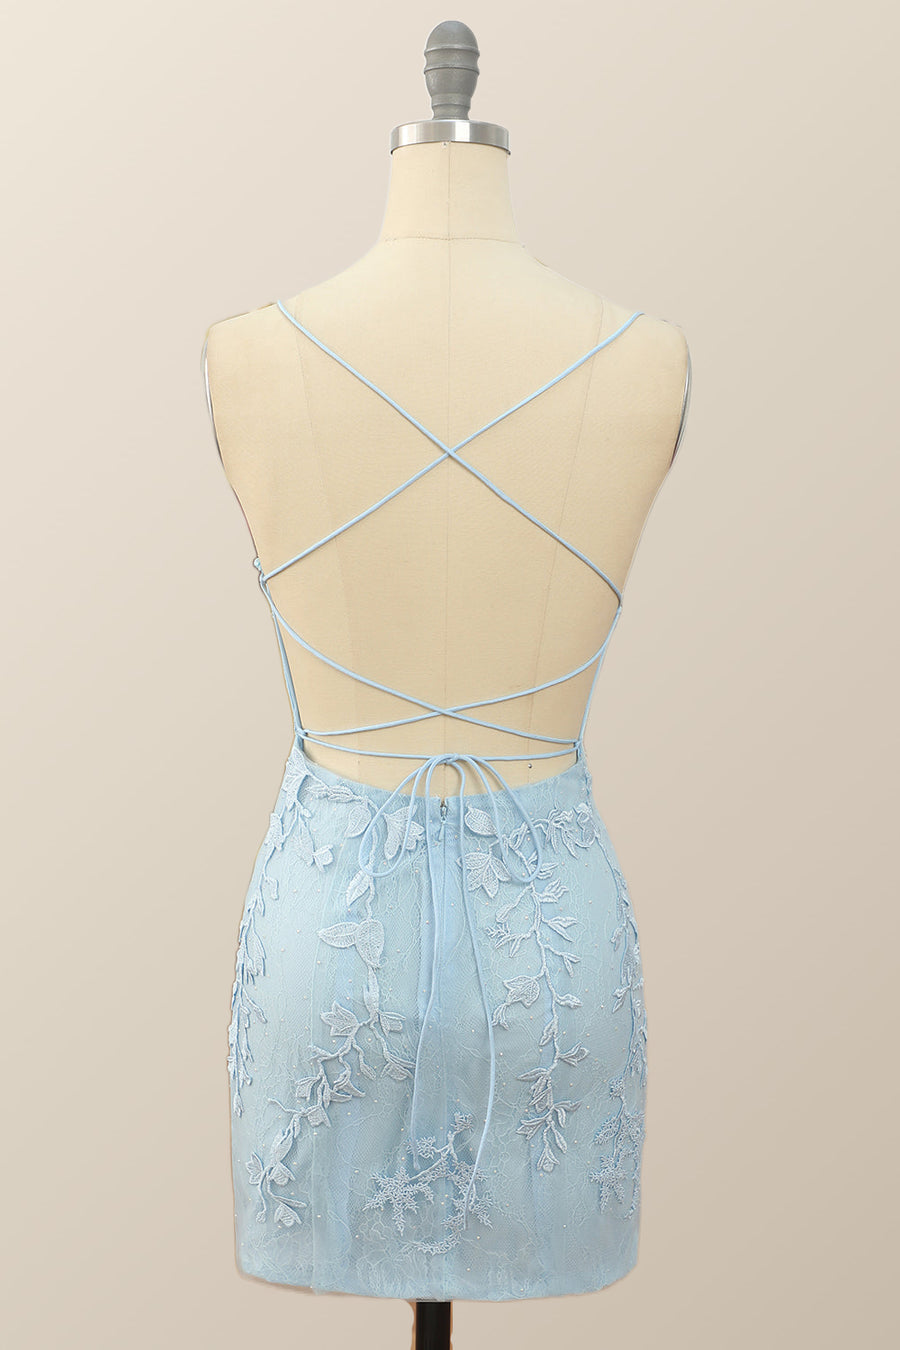 Light Blue Lace Straps Tight Mini Dress